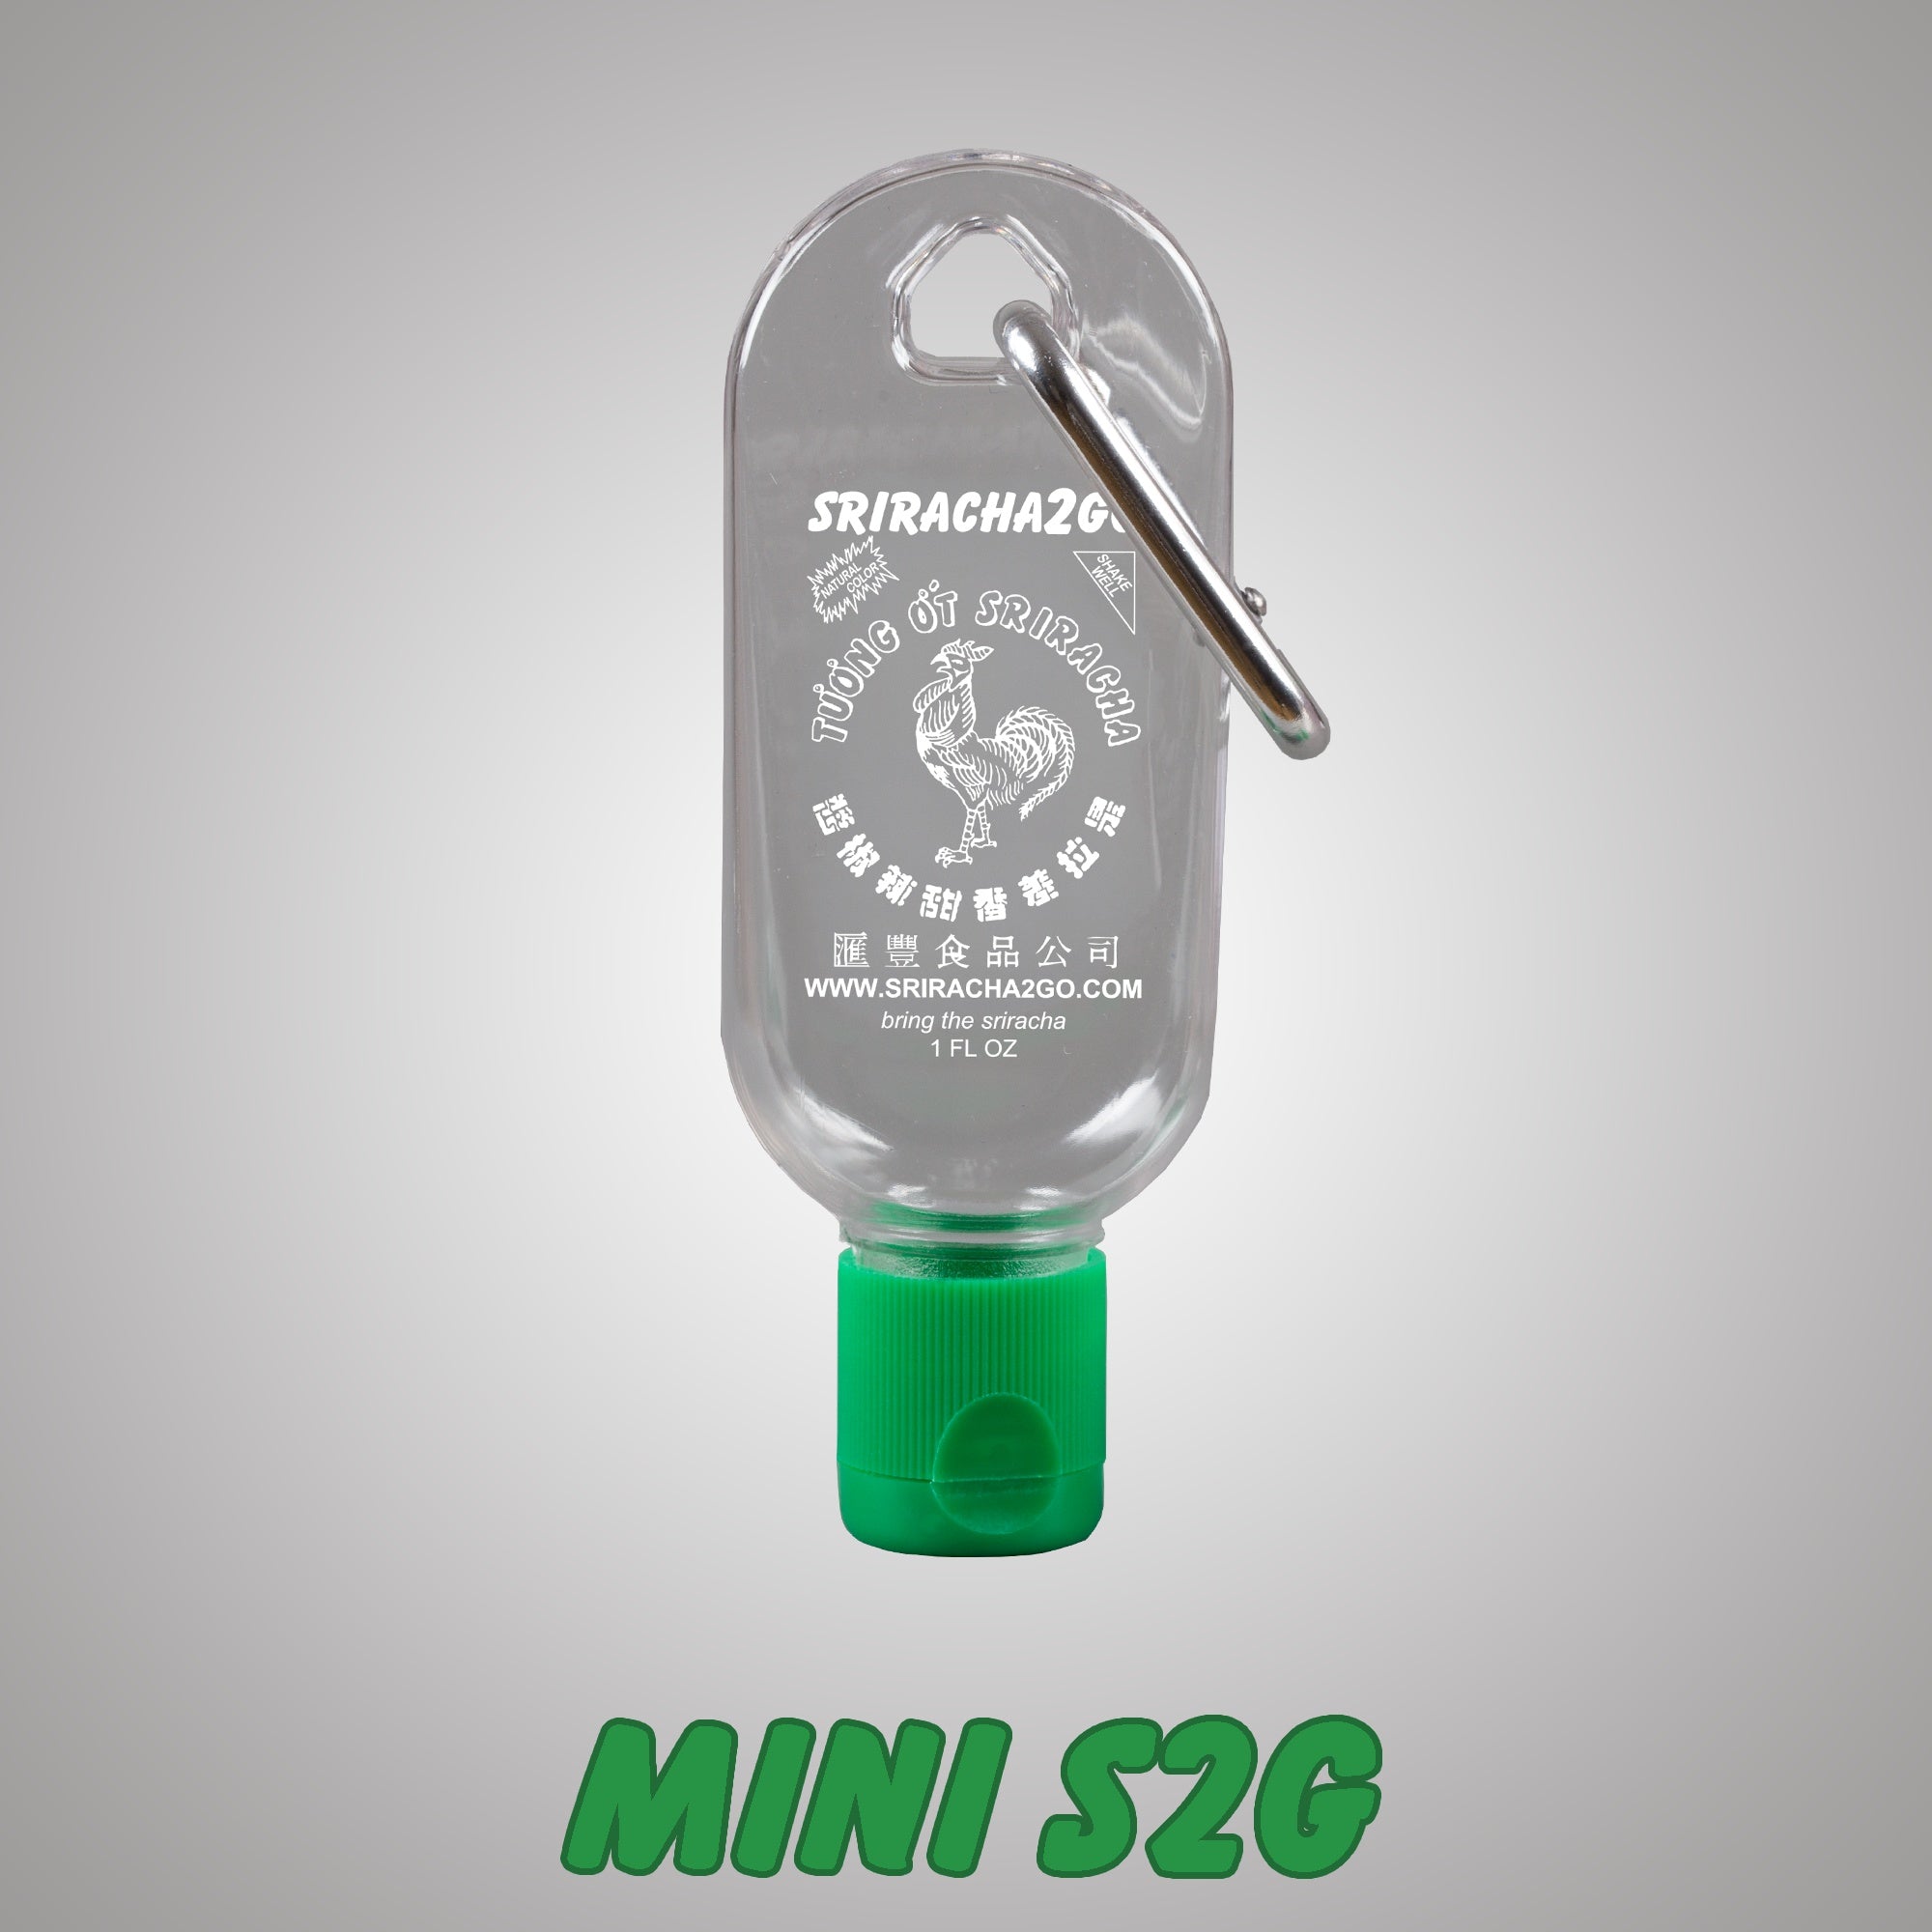 Mini Hot Sauce Keychain Bottle